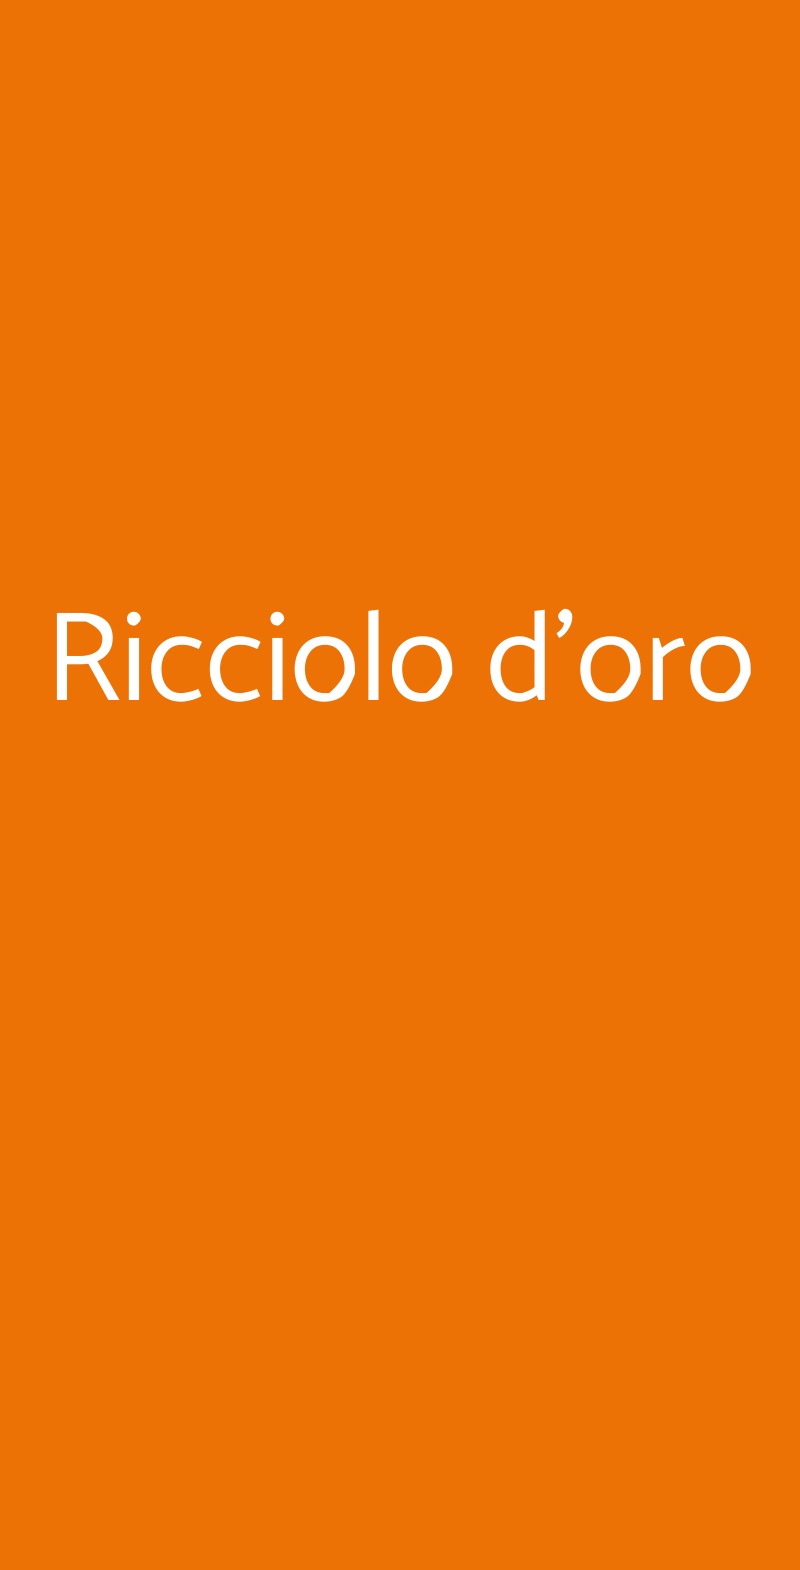 Ricciolo d'oro Milano menù 1 pagina